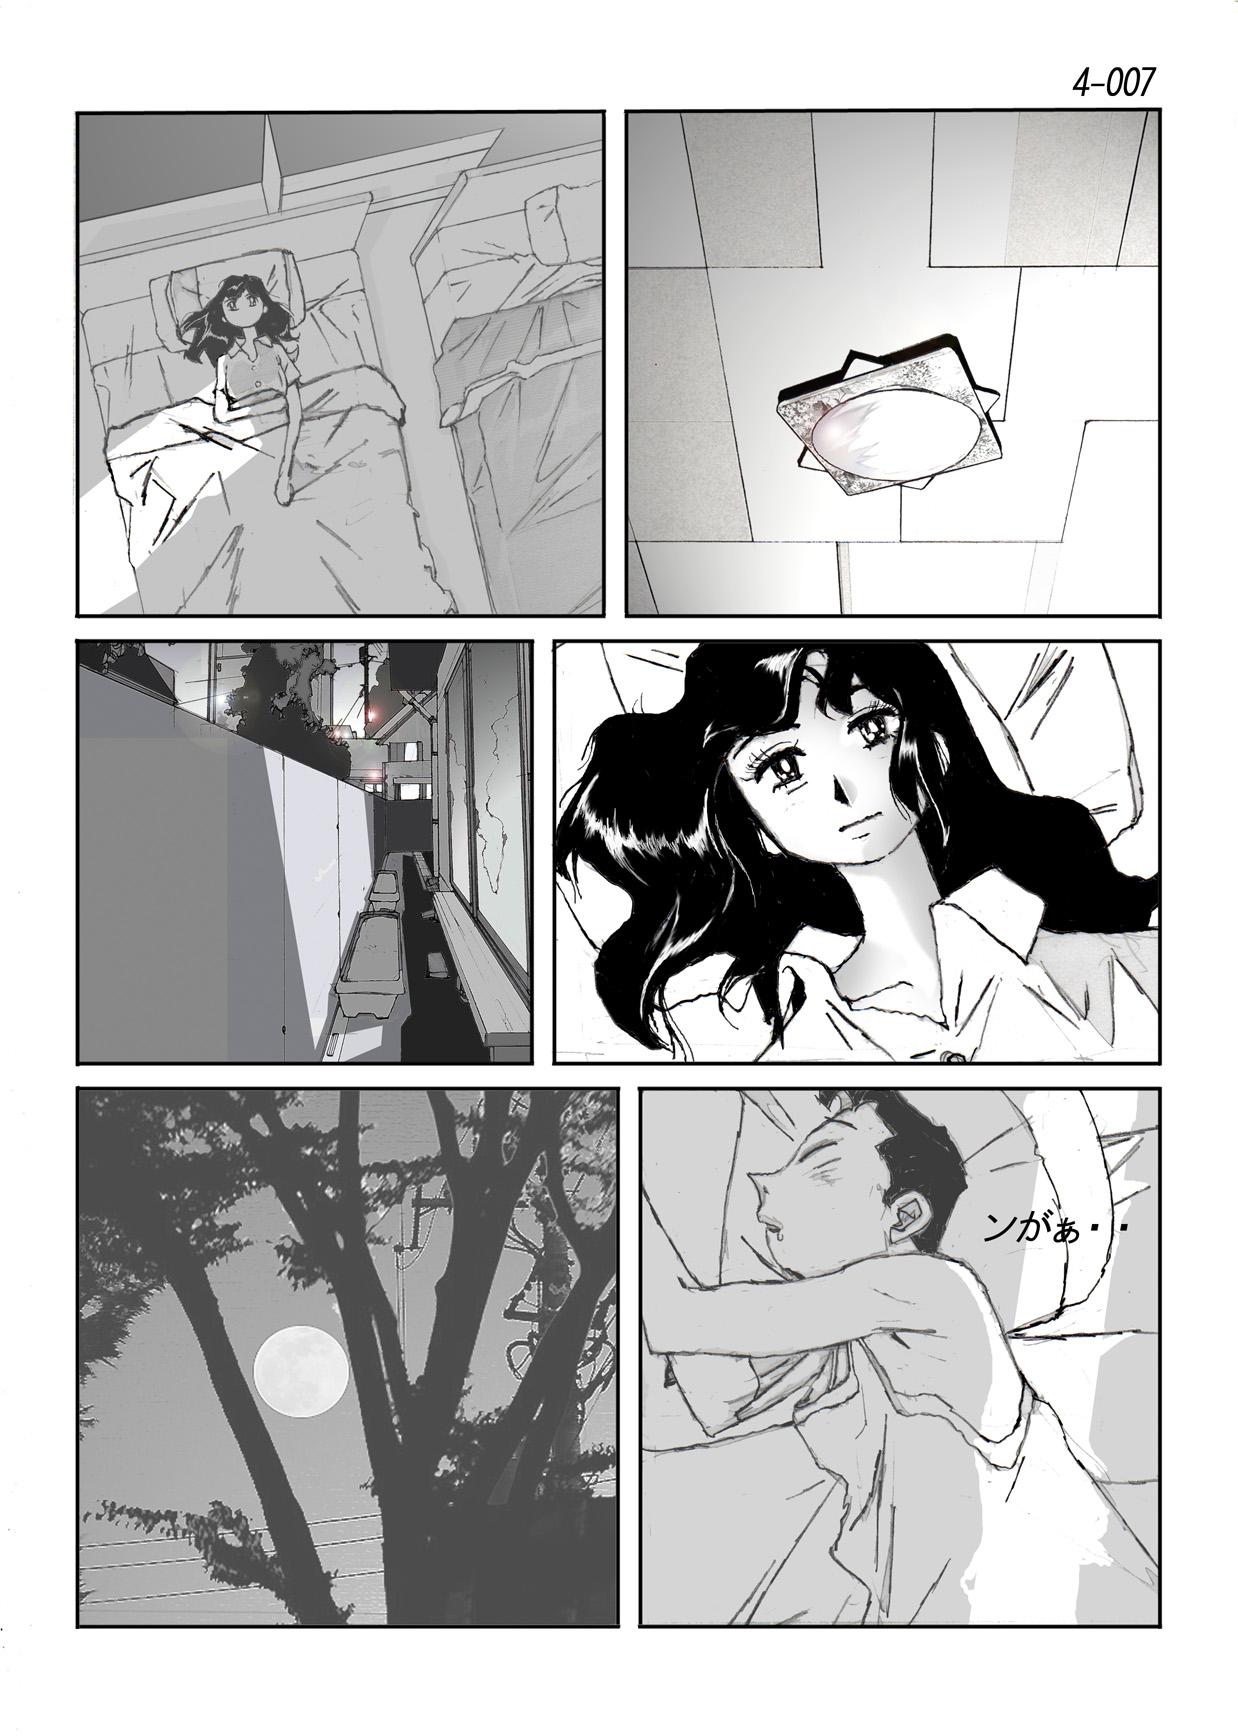 Nasty Kamo no Aji - Misako 4 Monster - Page 8